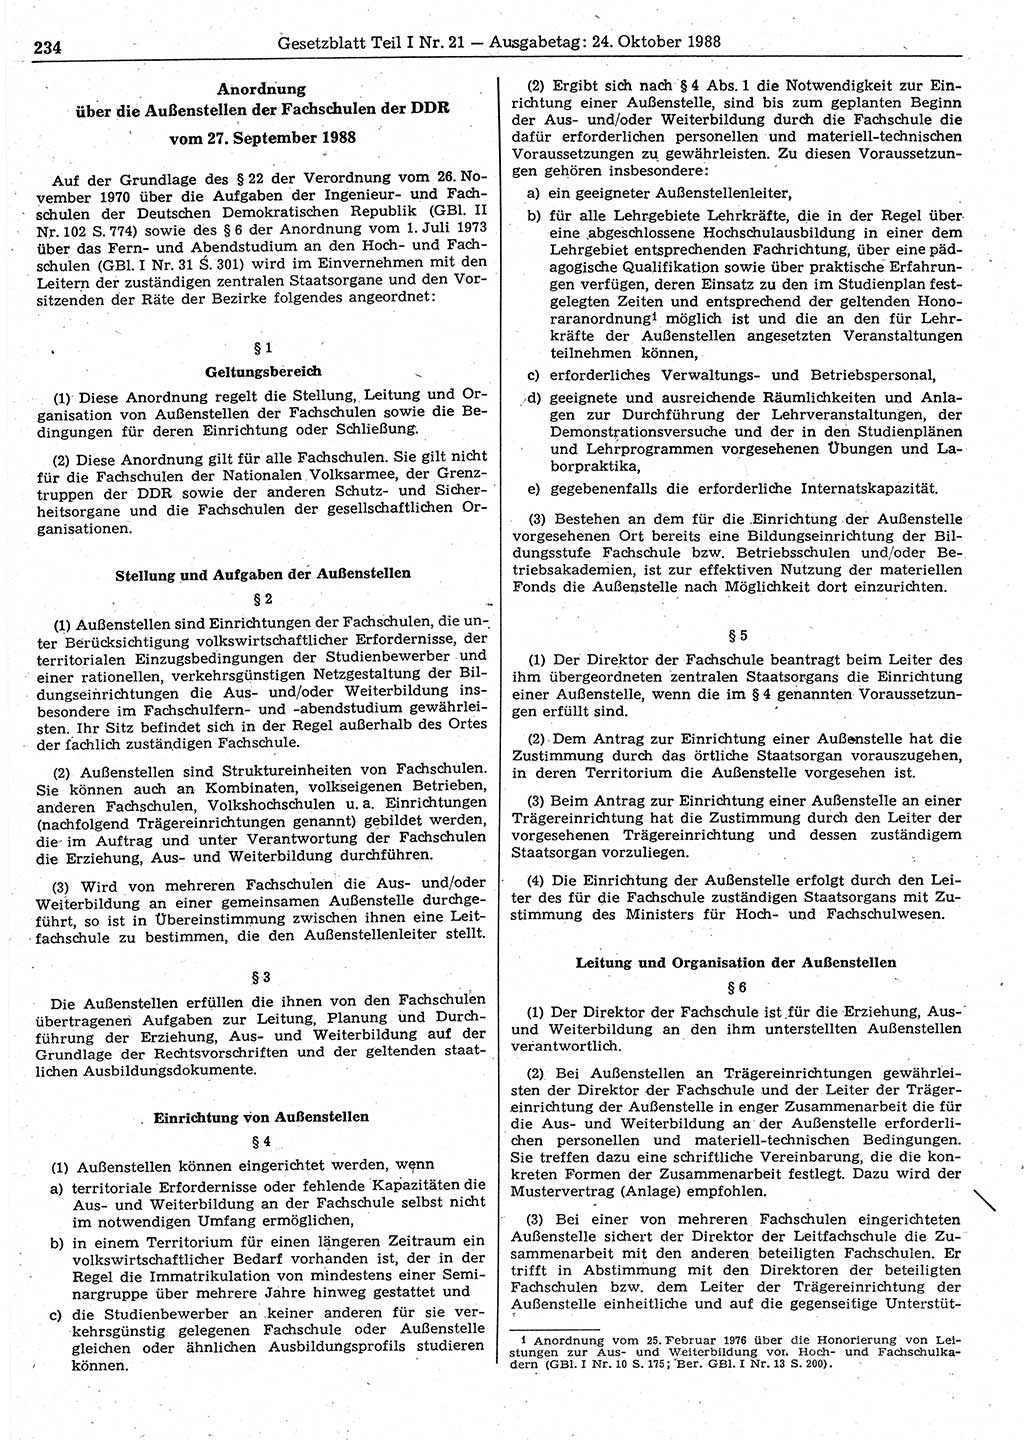 Gesetzblatt (GBl.) der Deutschen Demokratischen Republik (DDR) Teil Ⅰ 1988, Seite 234 (GBl. DDR Ⅰ 1988, S. 234)